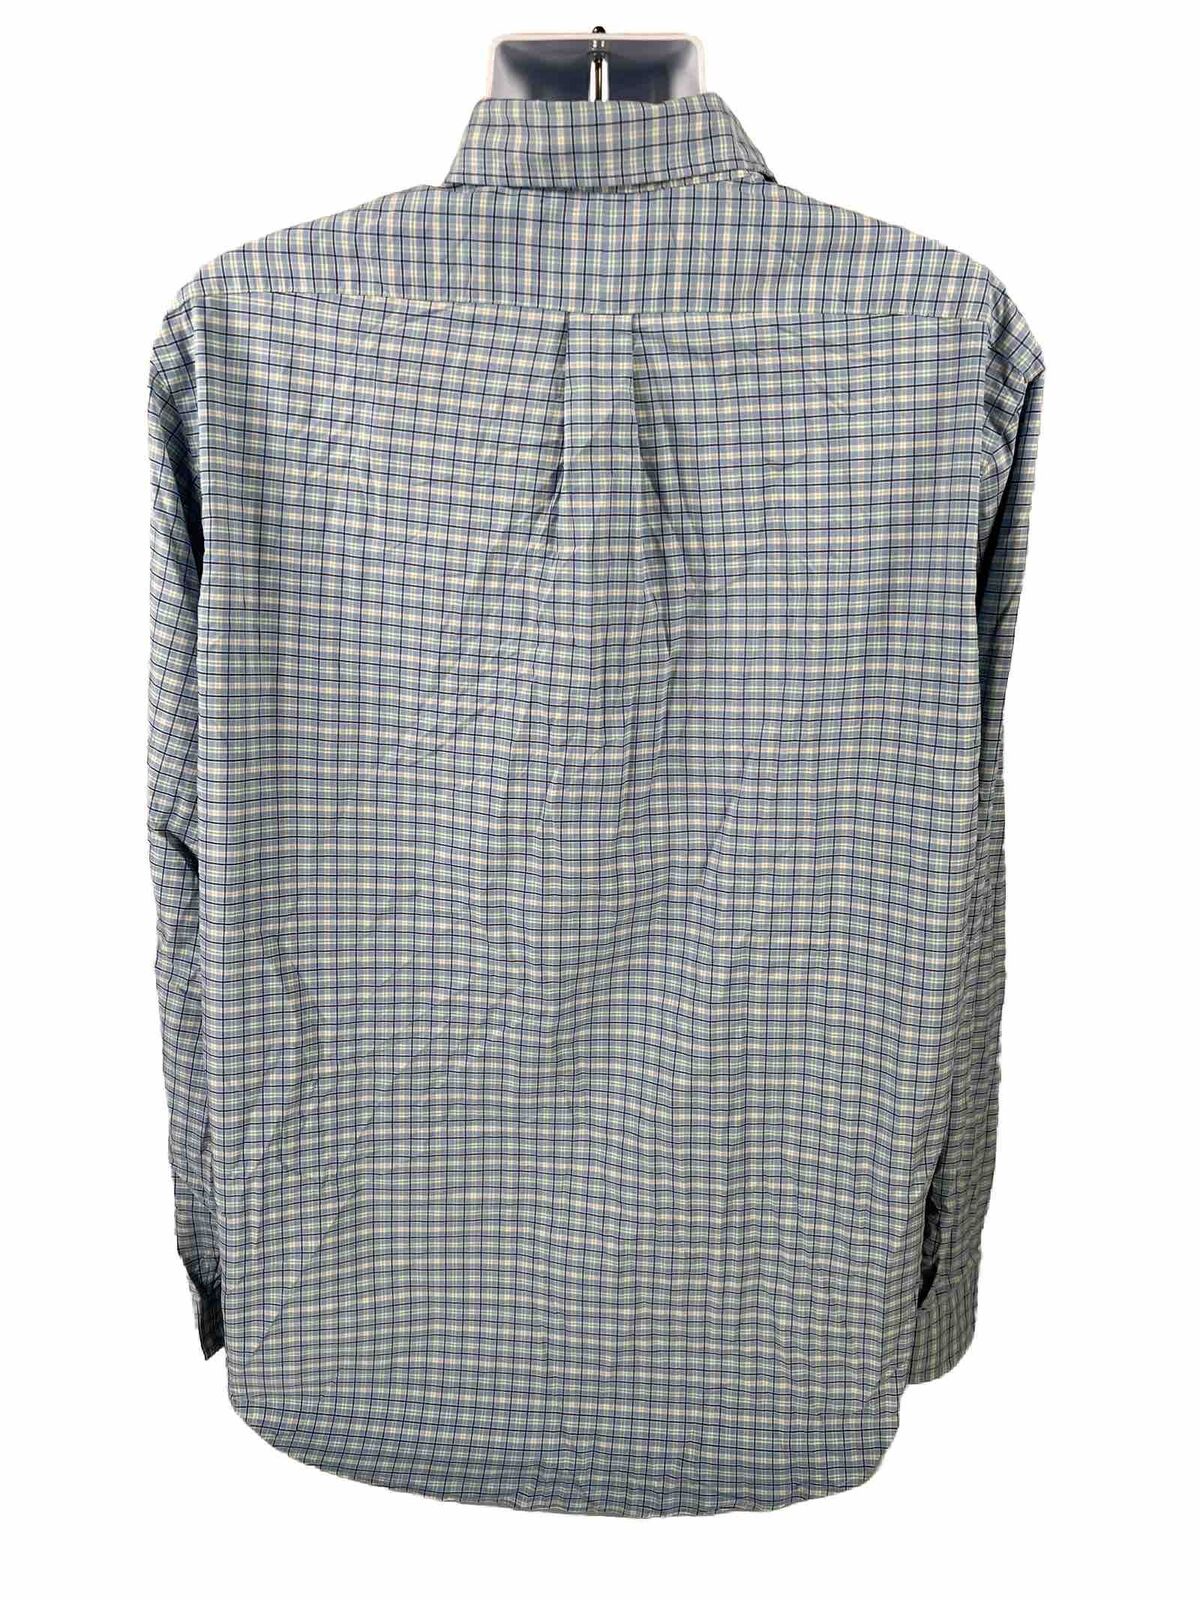 Ralph Lauren Men's Blue Classic Performance Button Up Shirt - 2XL